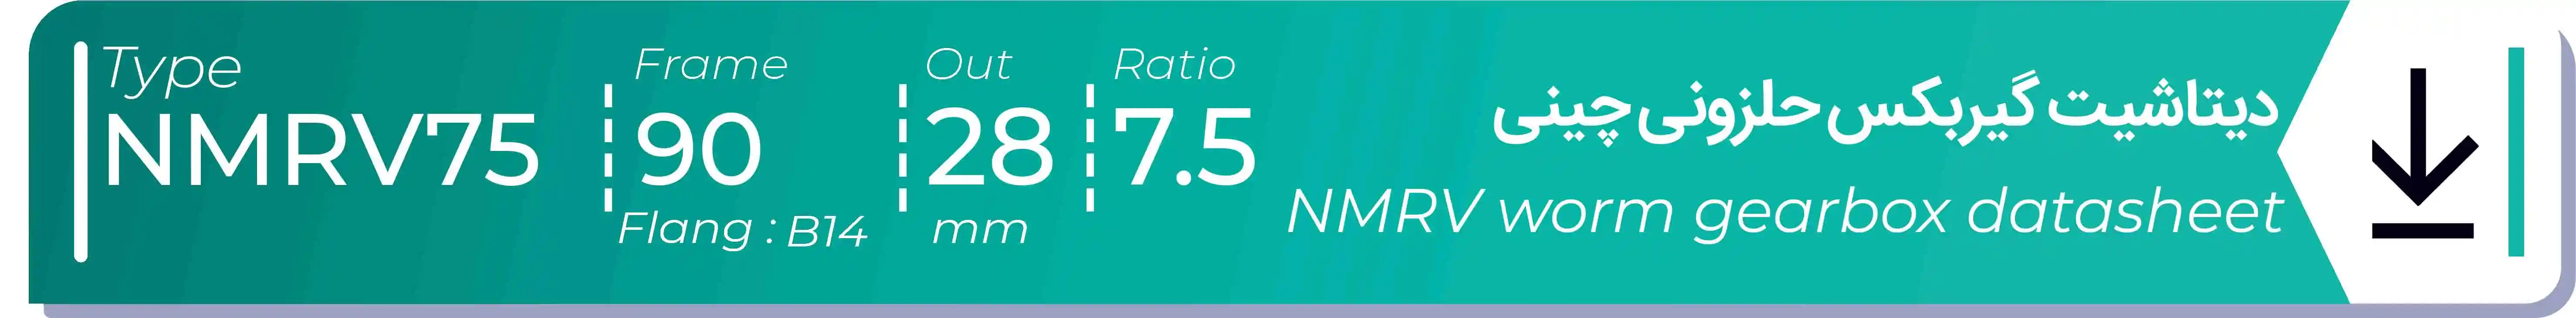  دیتاشیت و مشخصات فنی گیربکس حلزونی چینی   NMRV75  -  با خروجی 28- میلی متر و نسبت7.5 و فریم 90